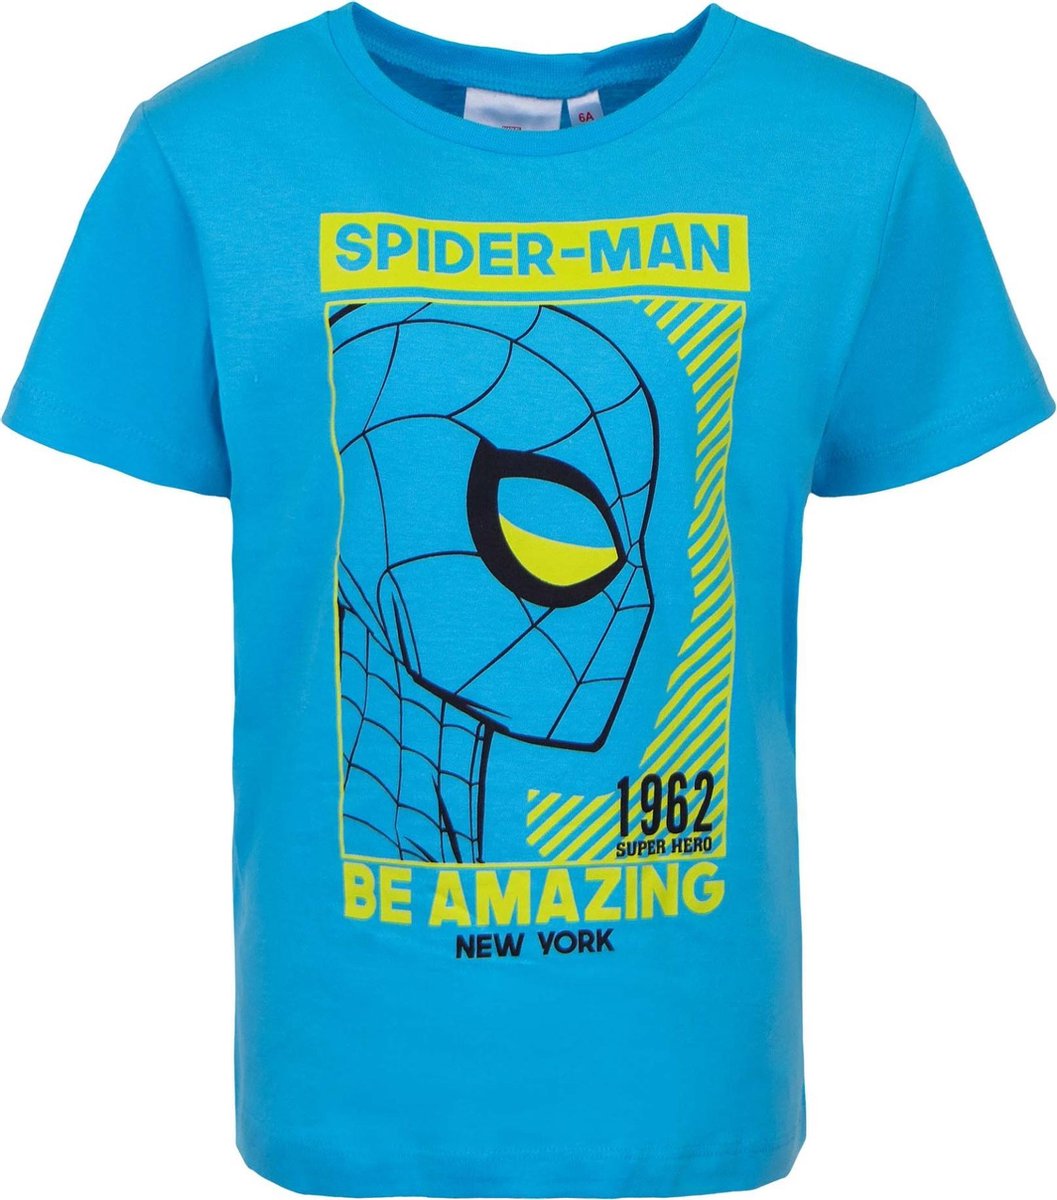 Spider-Man - T-shirt - Blauw - 8 jaar - 128cm